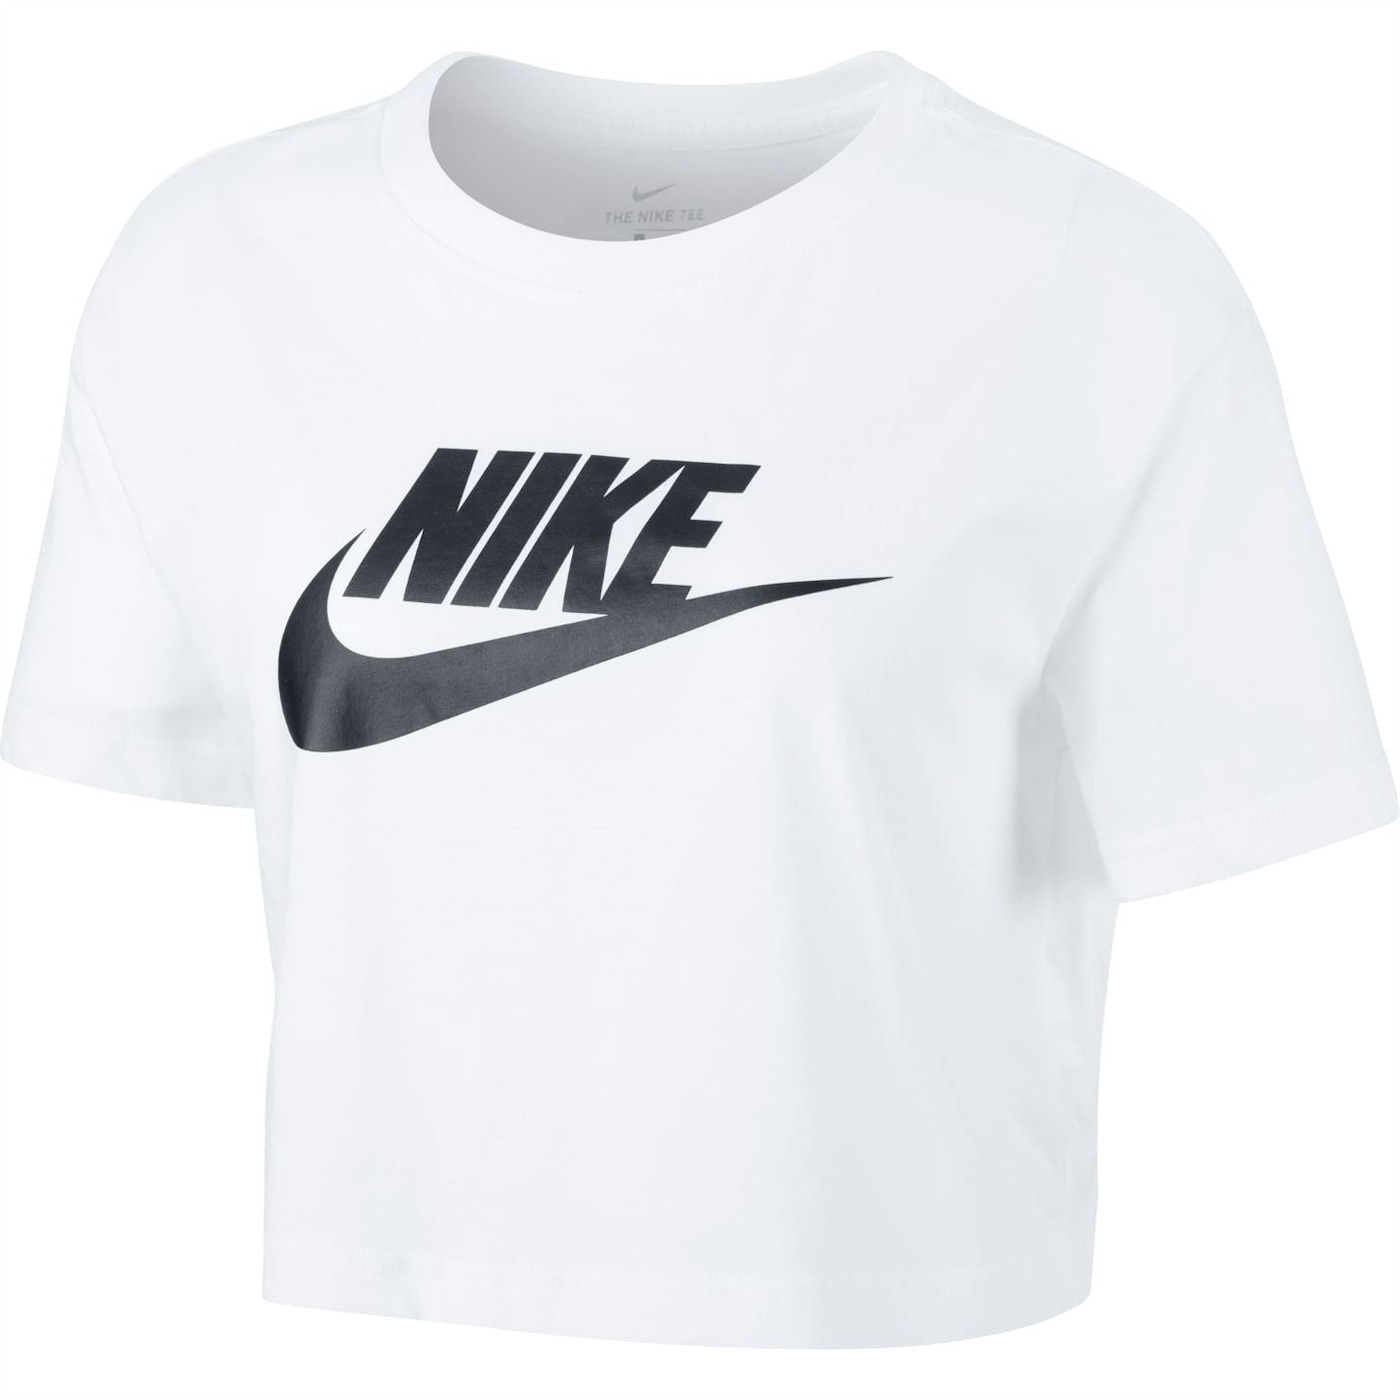 Жени  Дамско облекло  Блузи  Функционални тениски и потници Nike Futura Cropped T-Shirt 1435977-7735017